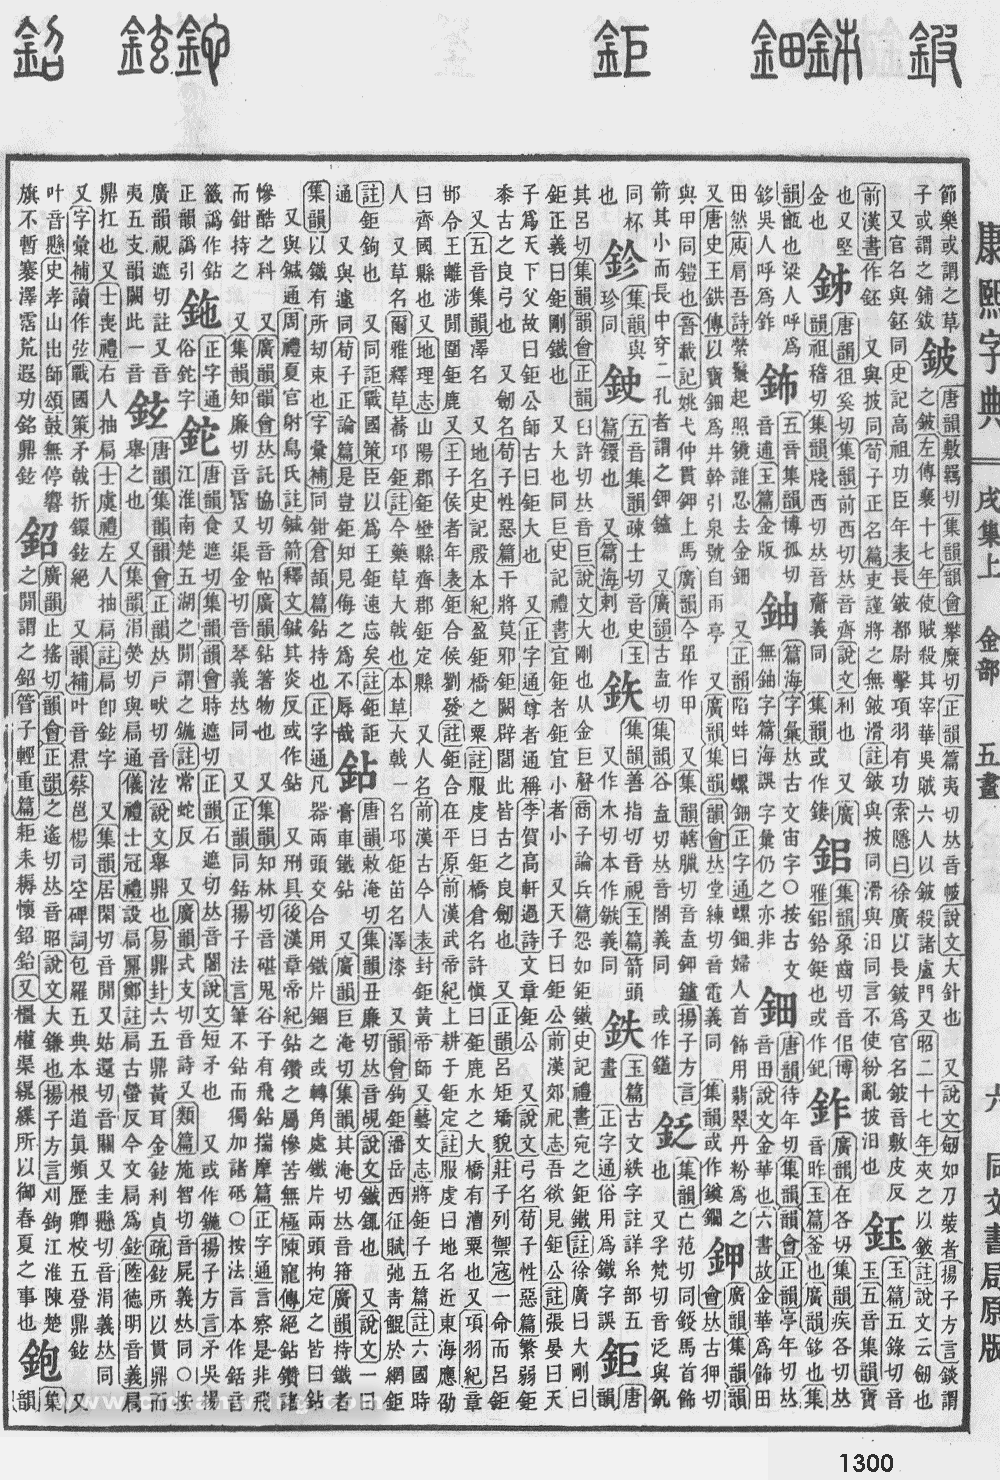 康熙字典掃描版第1300頁